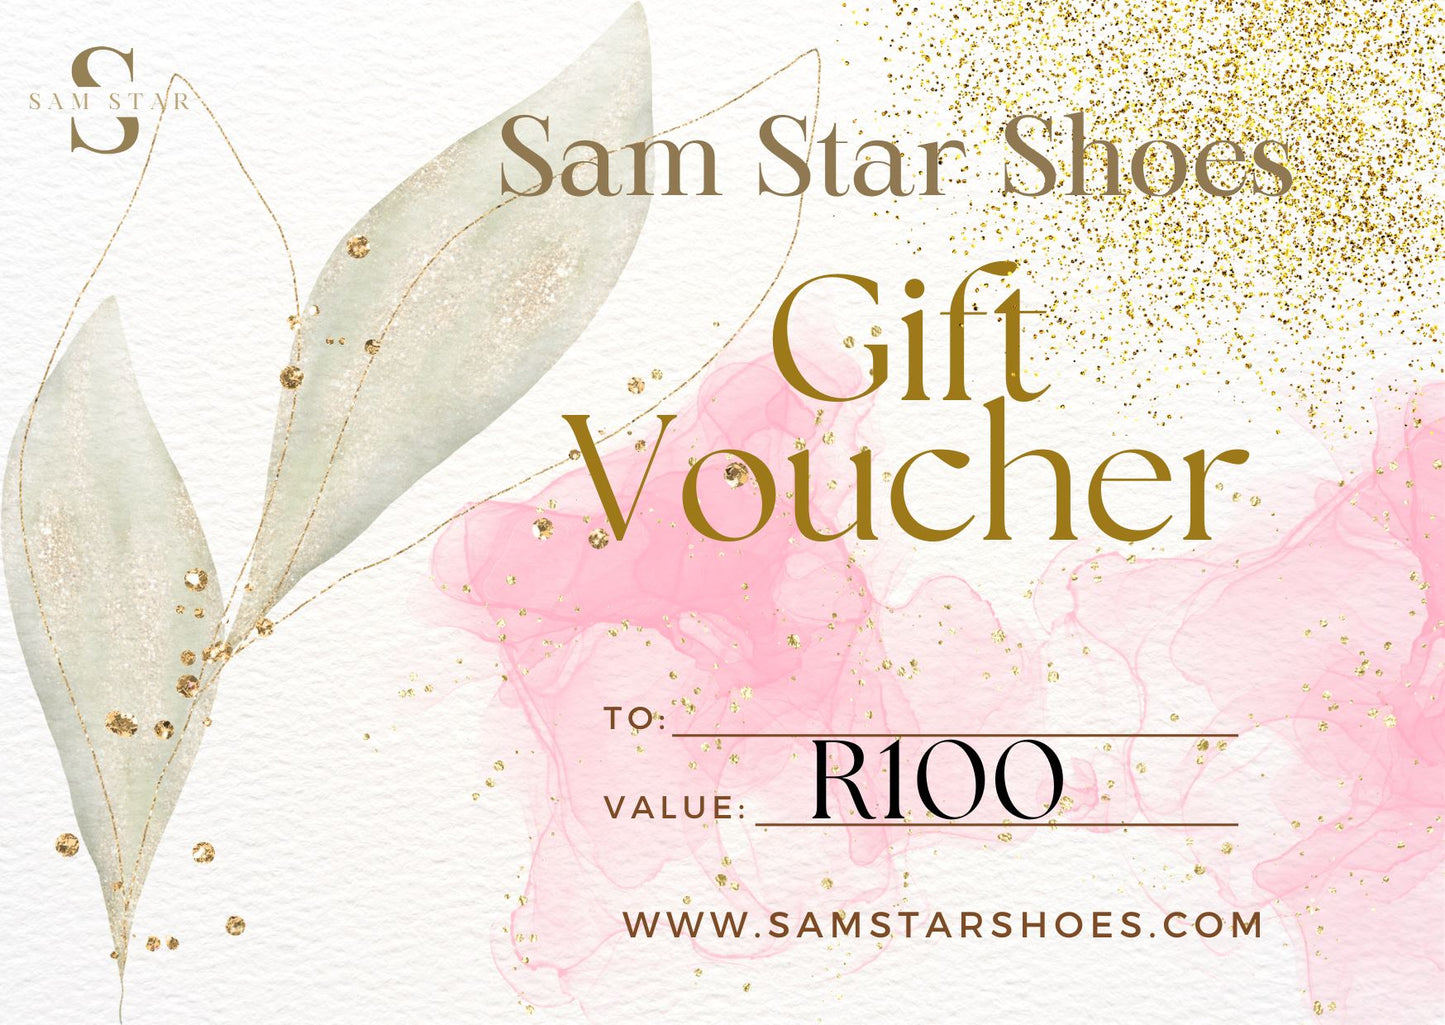 Sam Star Shoes gift card Sam Star Shoes R 100.00 